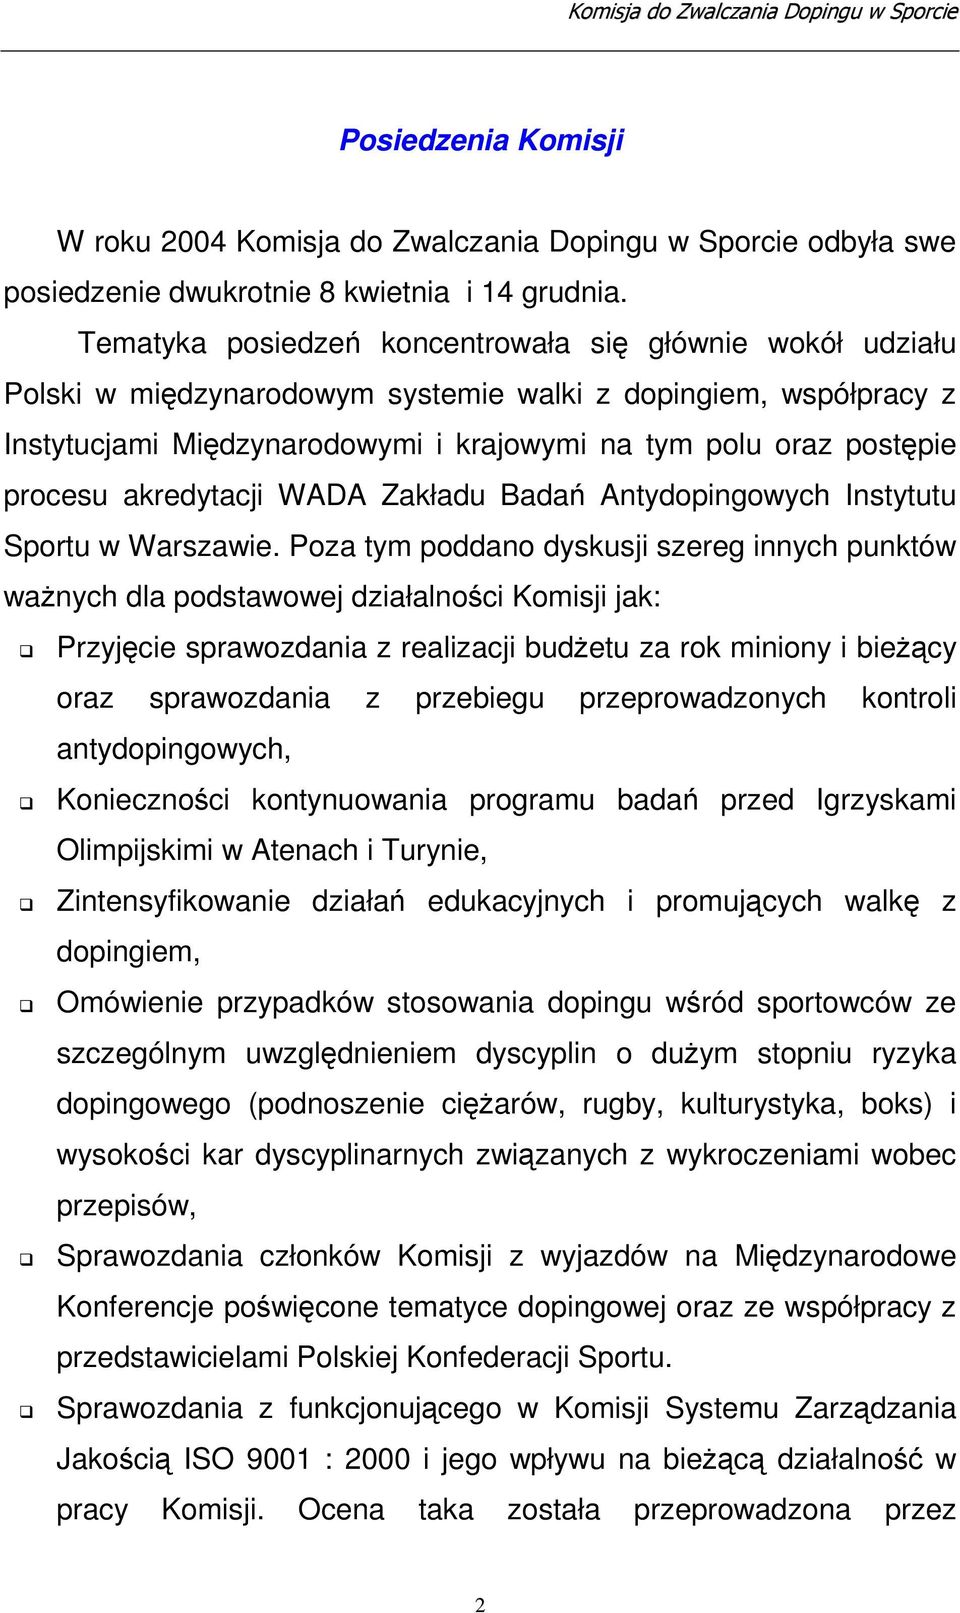 akredytacji WADA Zakładu Bada Antydopingowych Instytutu Sportu w Warszawie.